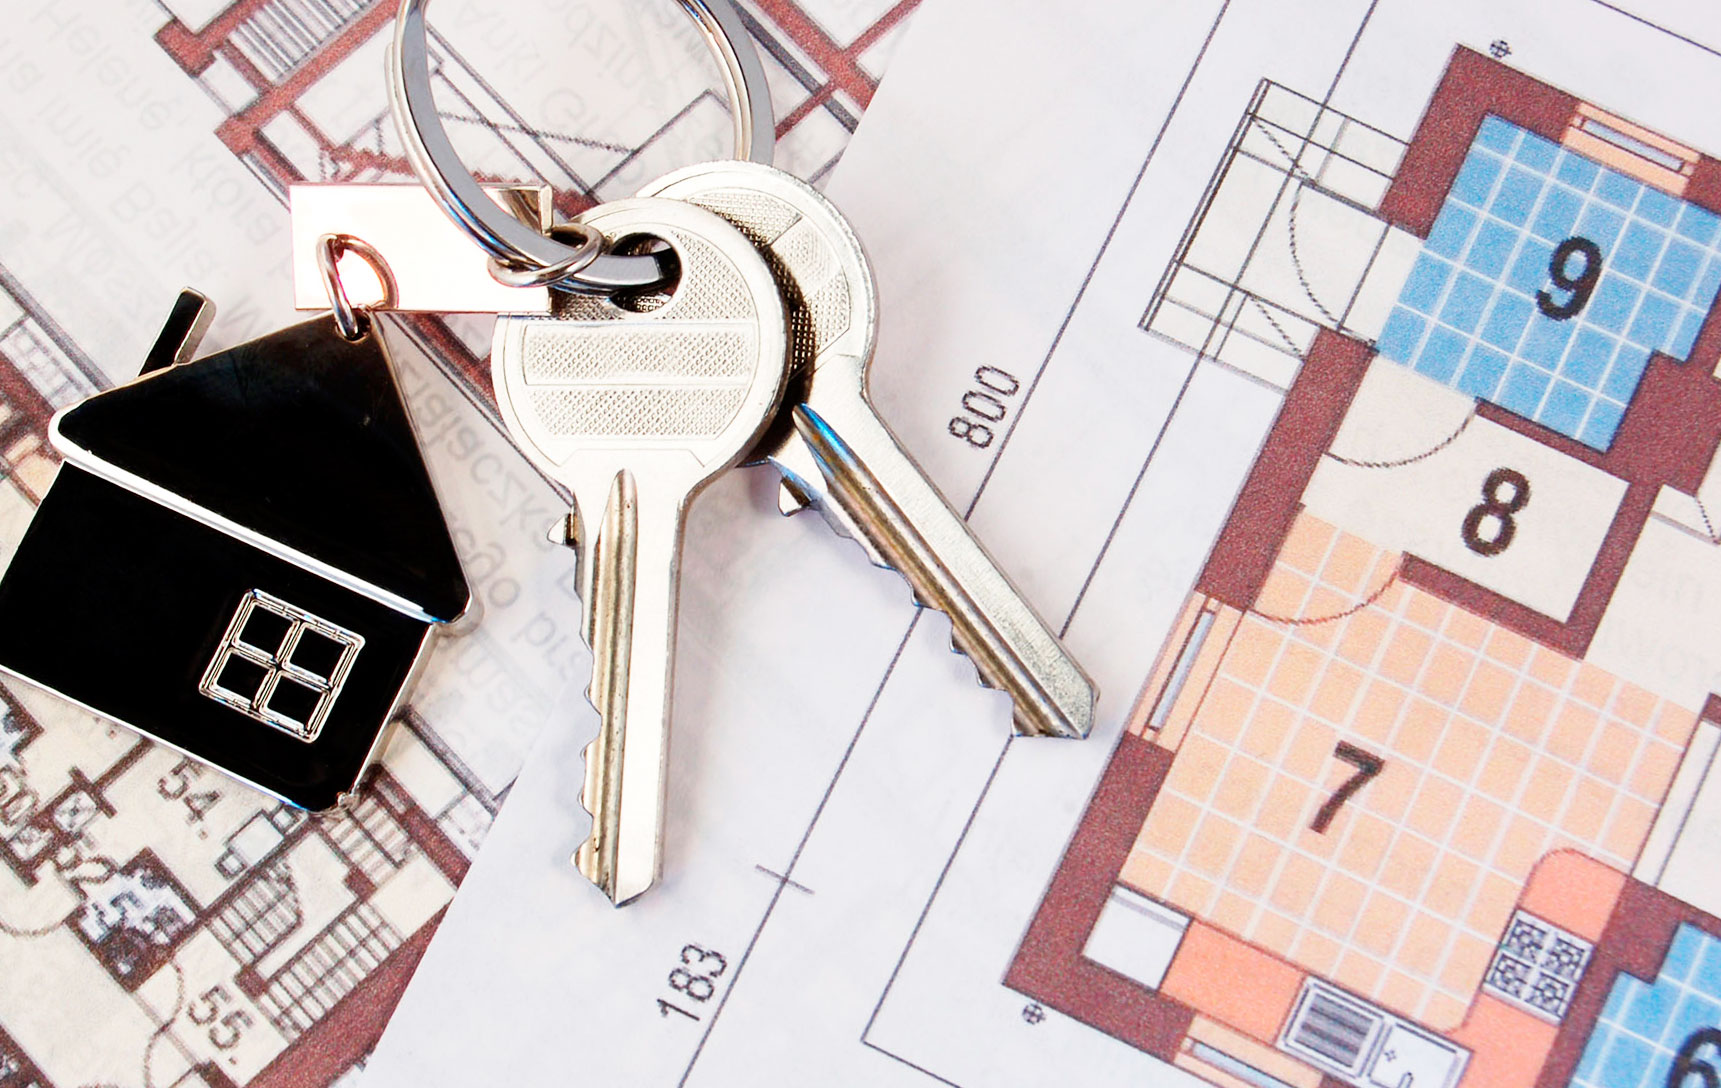 Продажа доли жилого помещения. Квартира ключи. Ключи от квартиры жилье. Квартира в наследство. Собственность на квартиру.